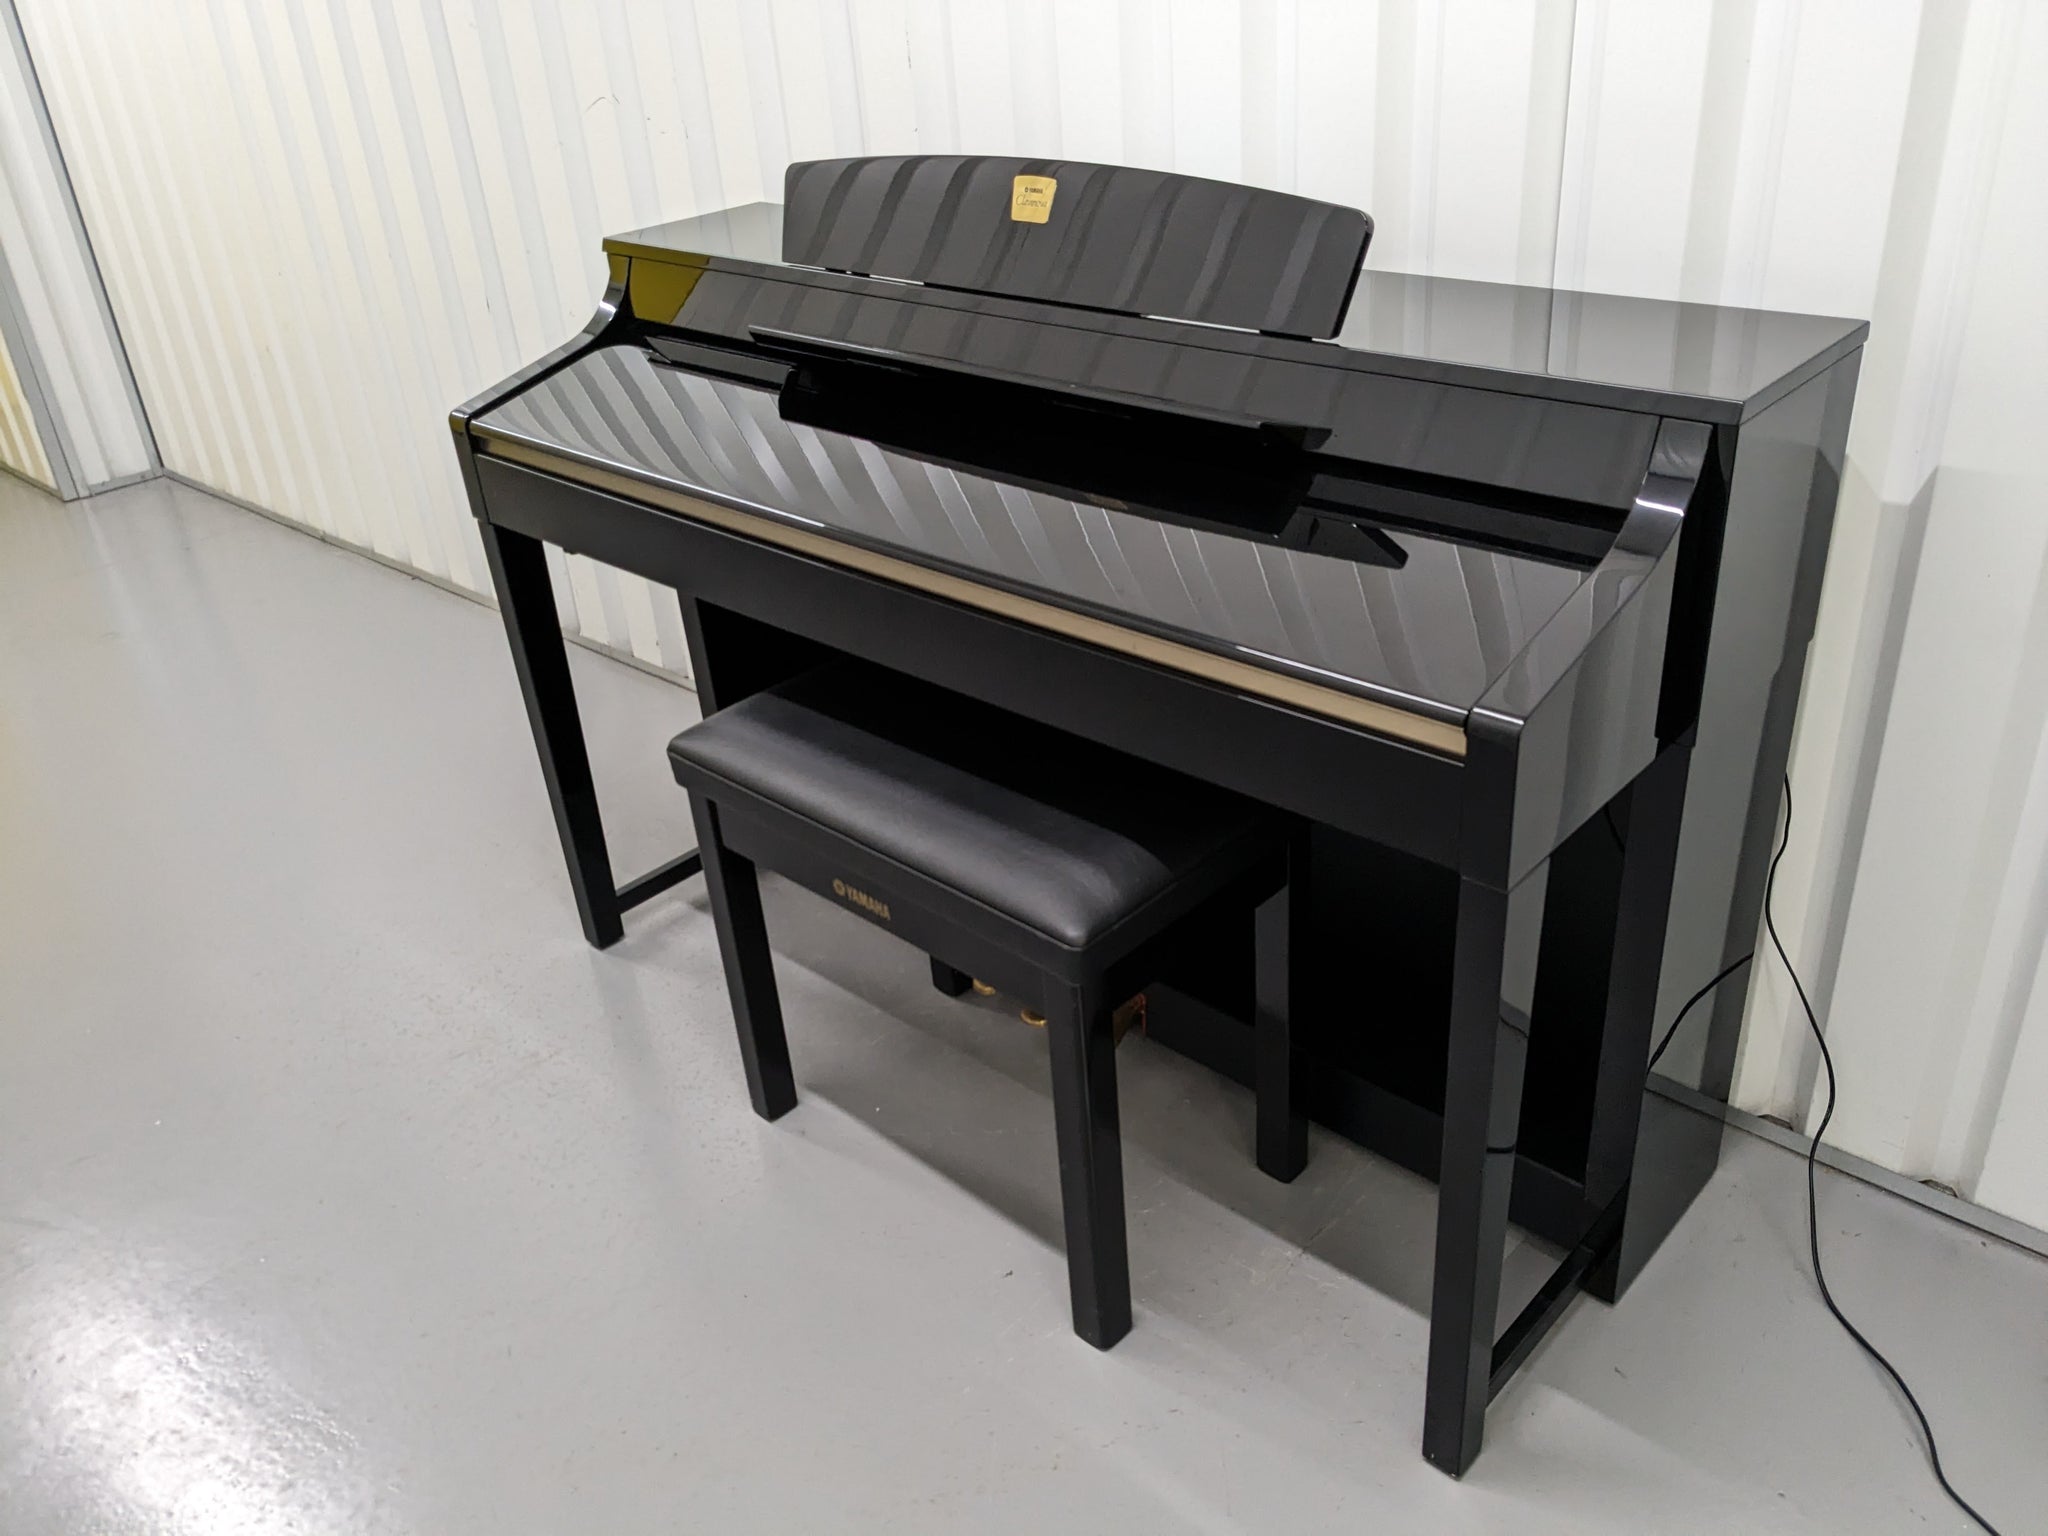 YAMAHA CLAVINOVA CLP-370PE DIGITAL PIANO + STOOL IN GLOSSY BLACK 